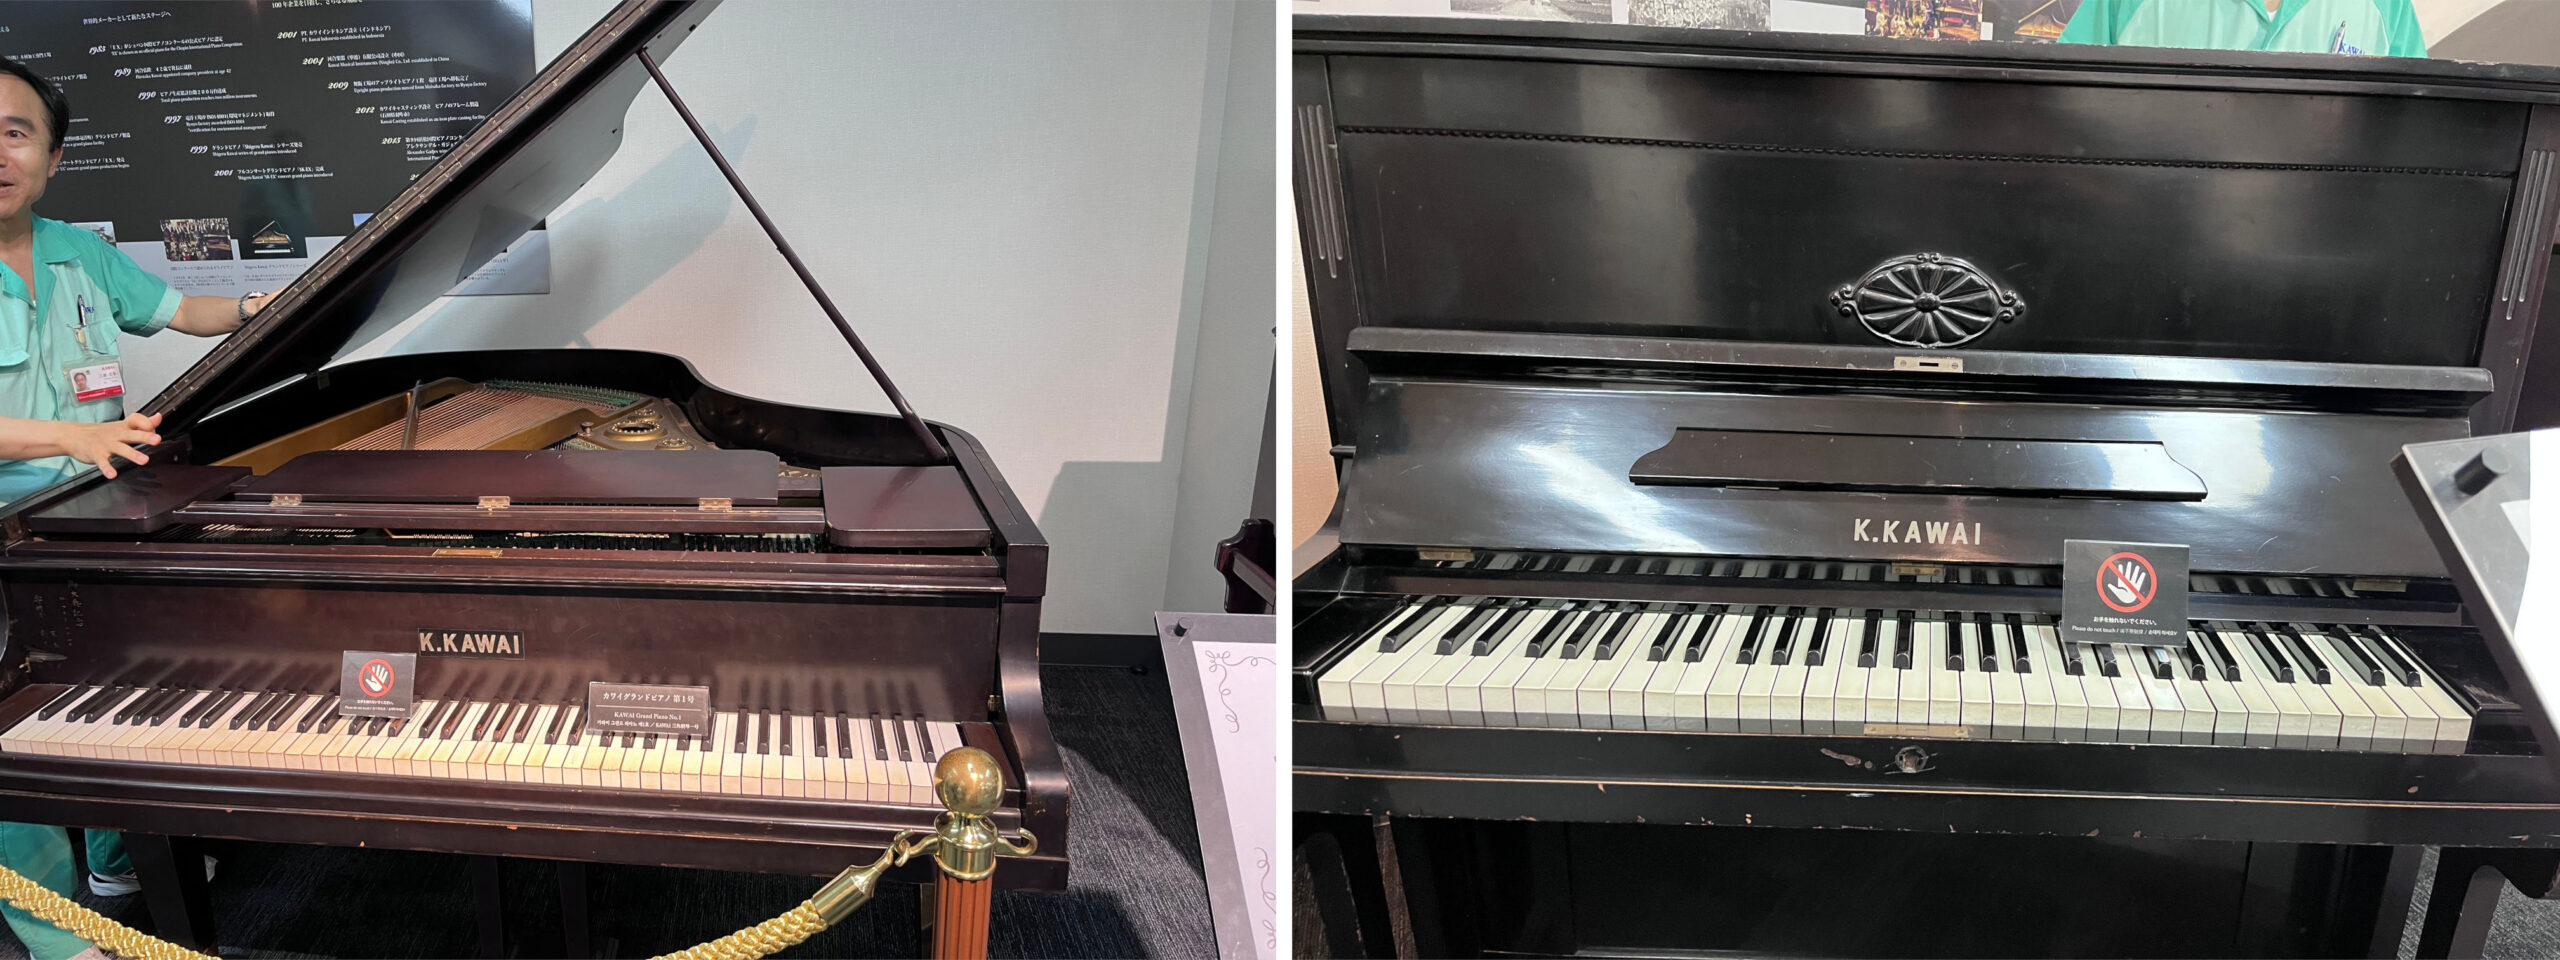 (左)カワイグランドピアノ第１号 (右)初期のカワイピアノ